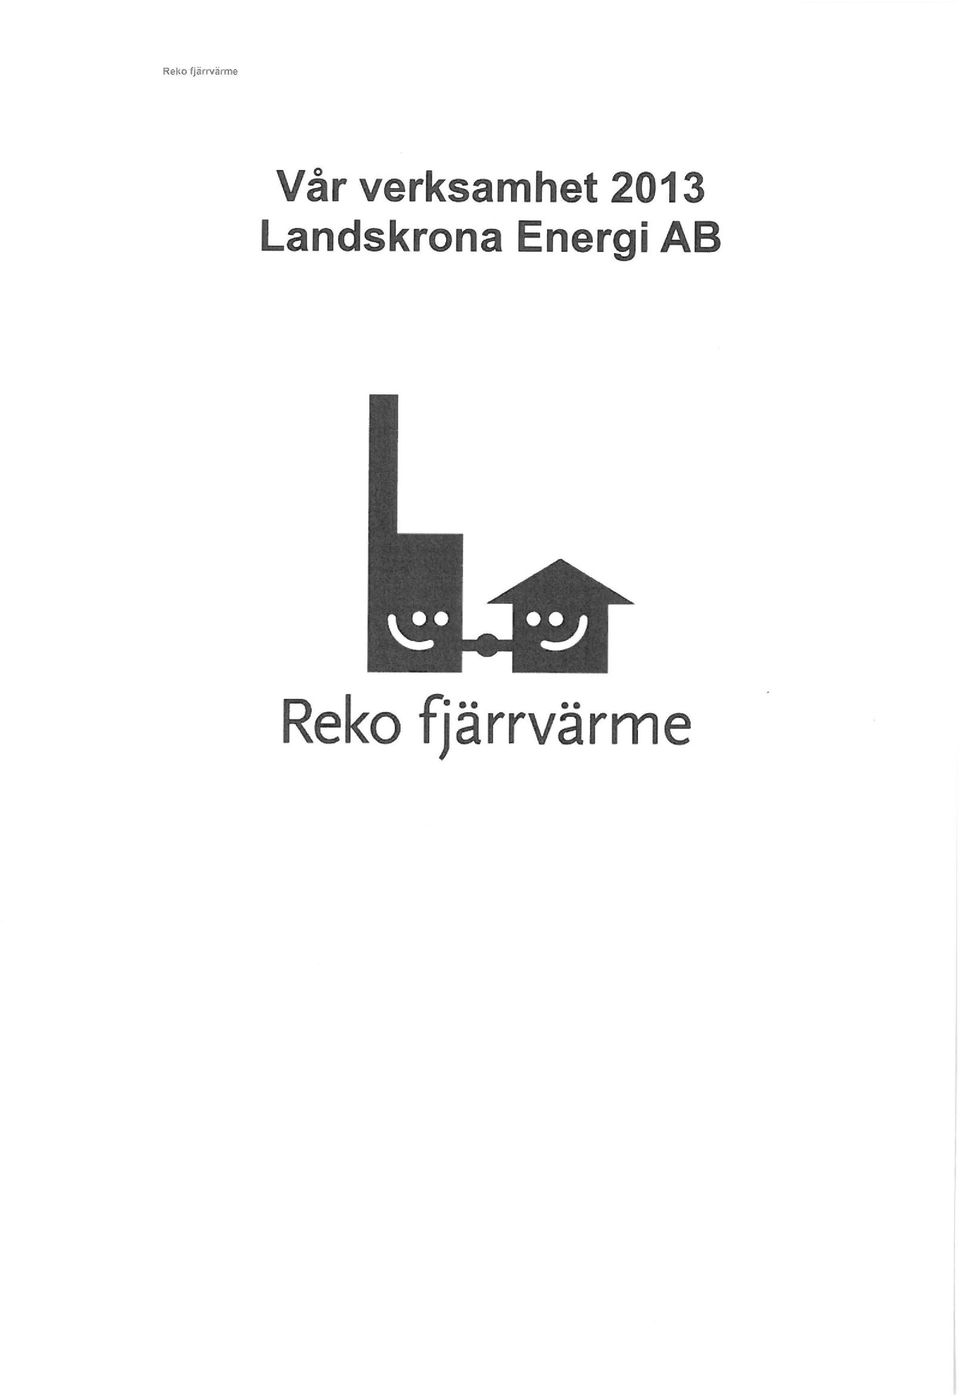 2013 Landskrona